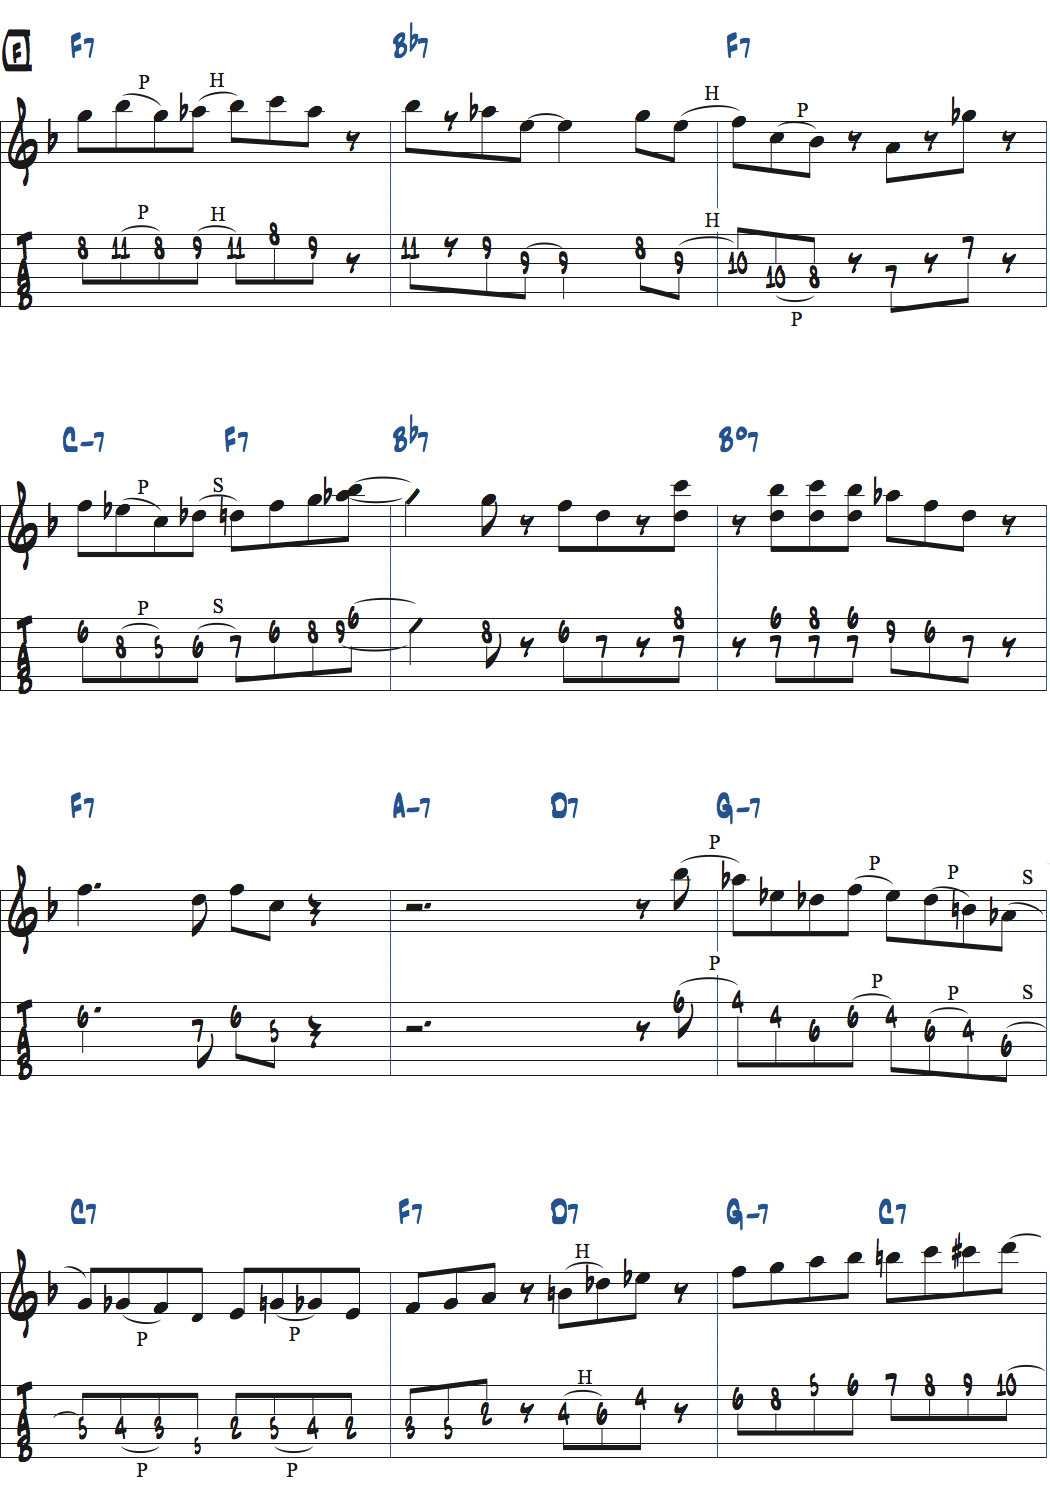 キーFのジャズブルースでのアドリブ楽譜ページ6